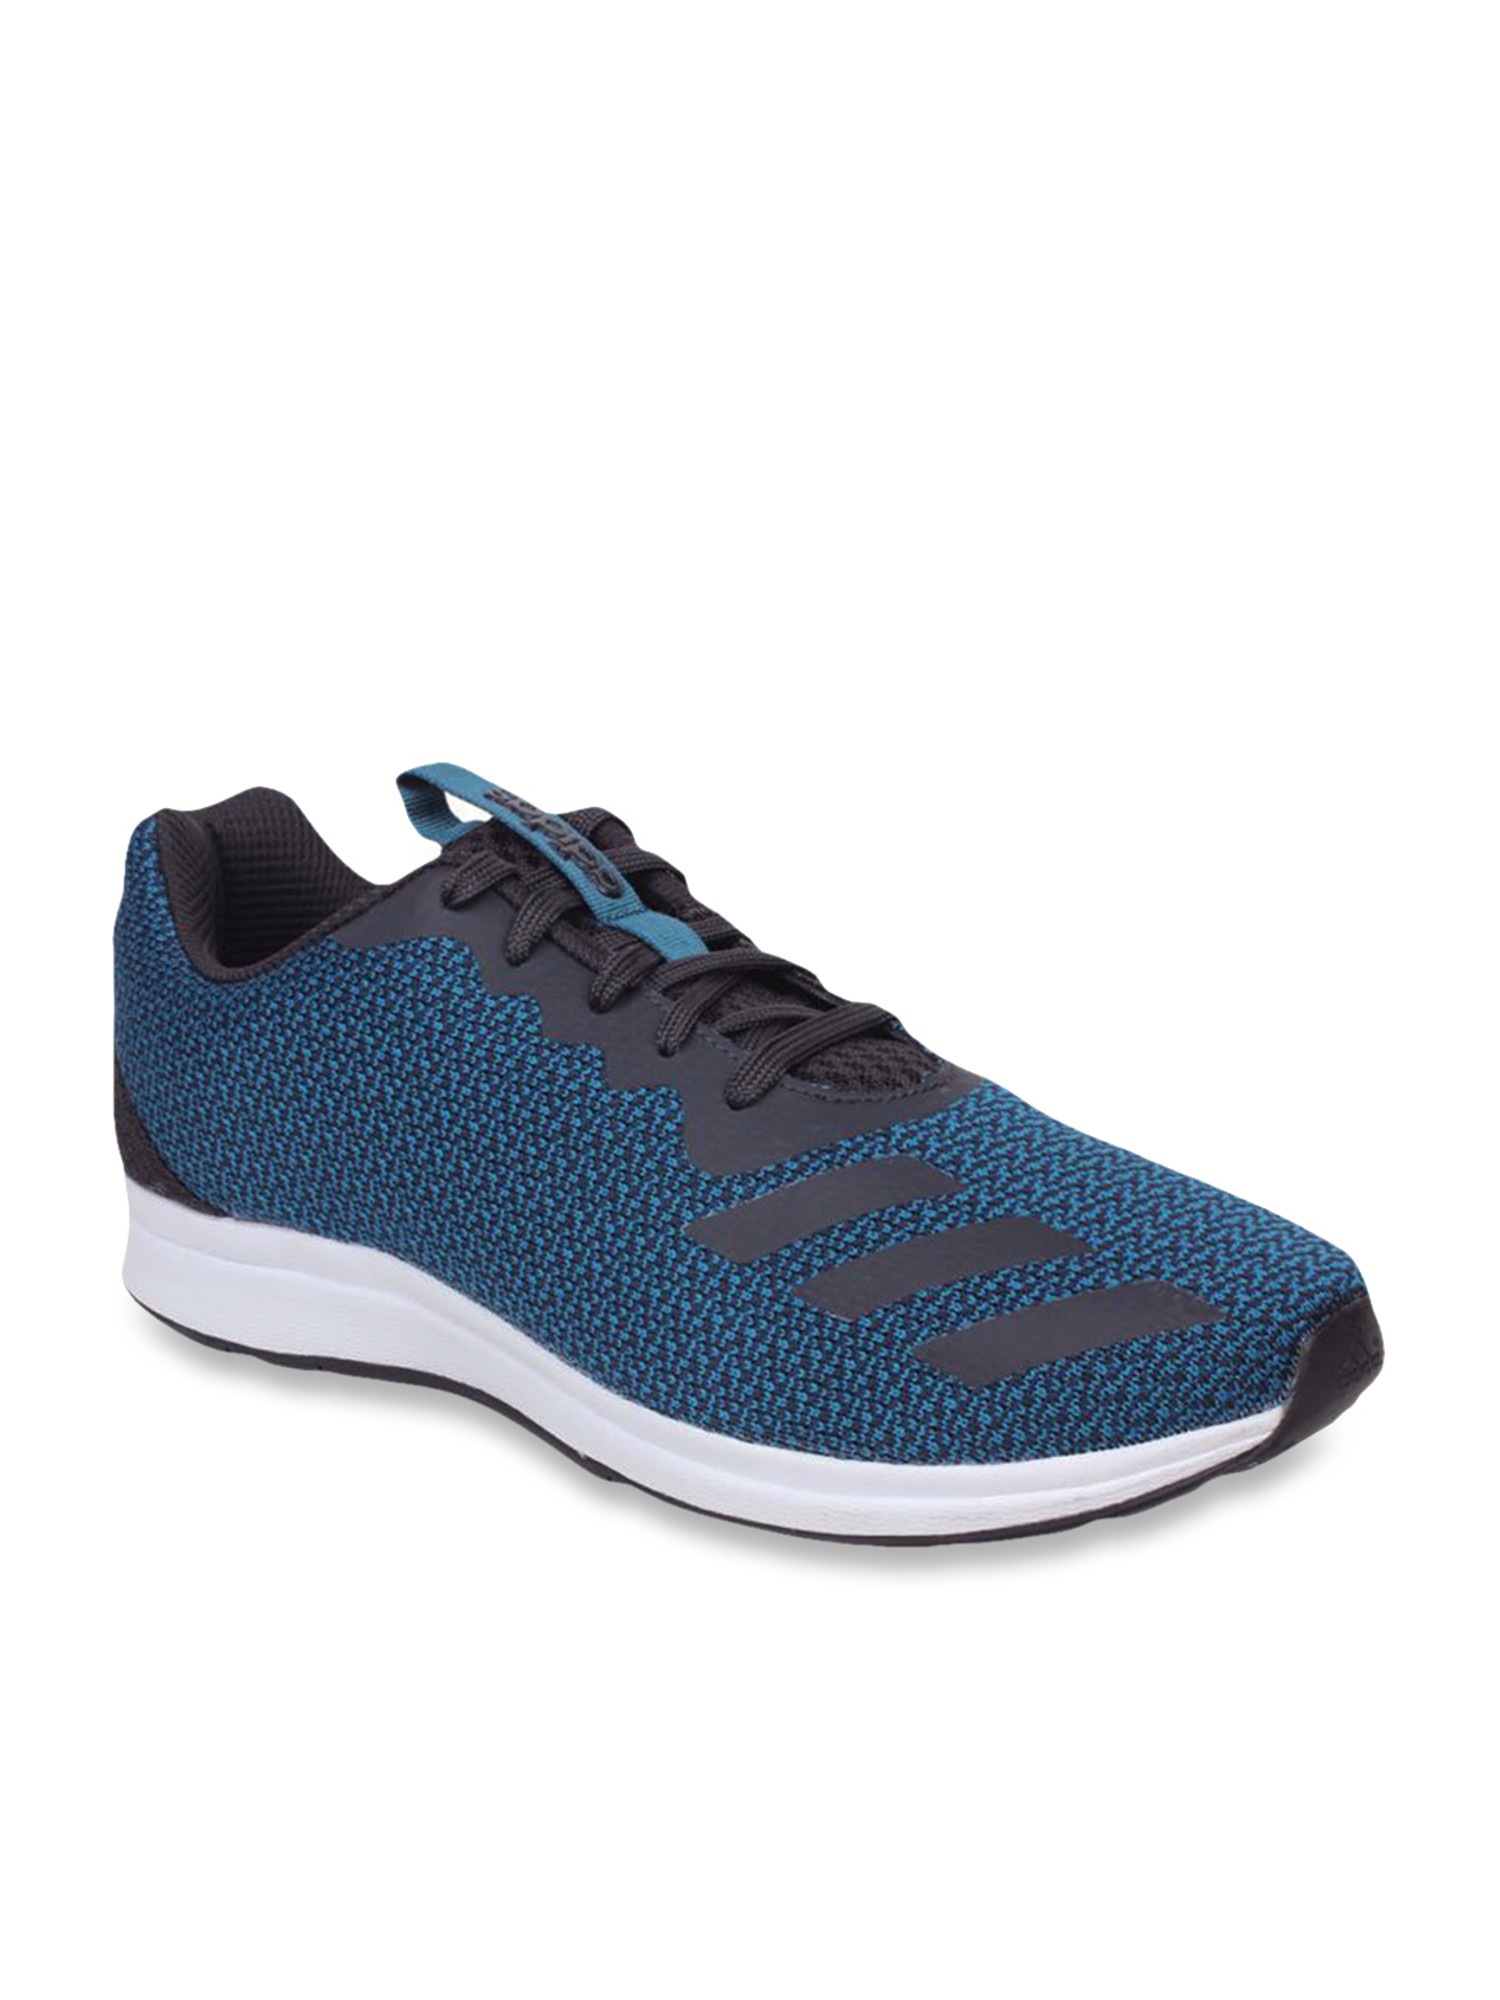 Buy Adidas Adispree 4.0 Teal Blue 